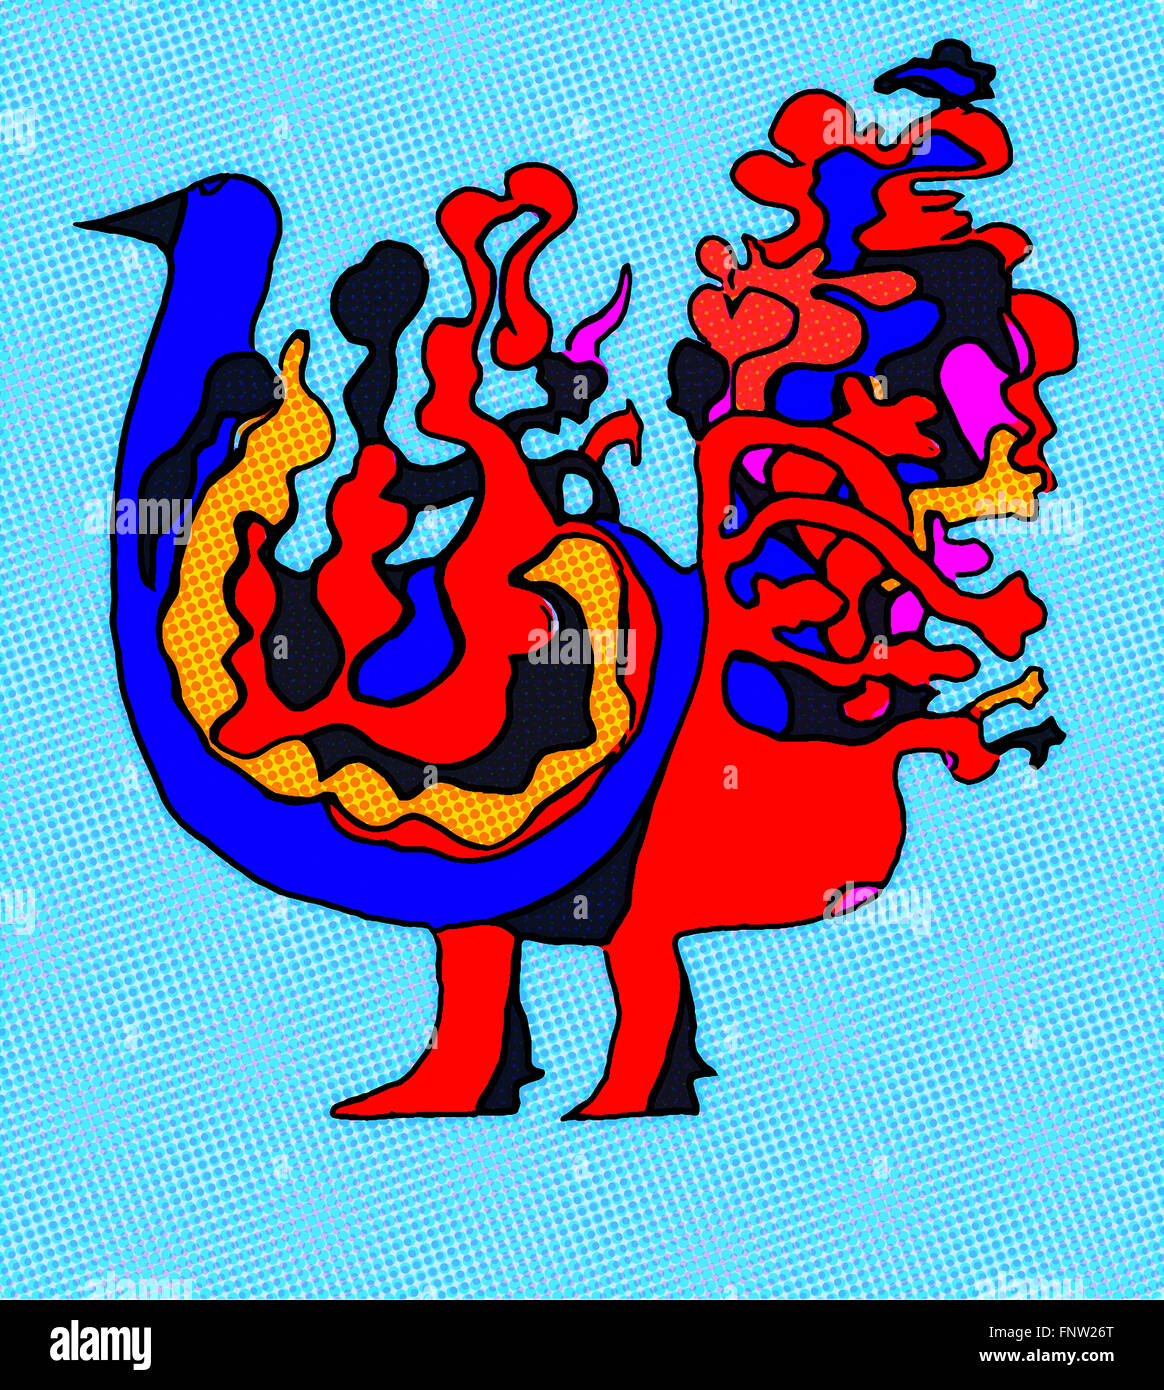 Immagine astratta di fantasia bird in colorate pop art design illustrazione su fondo azzurro con texture e punti. Foto Stock